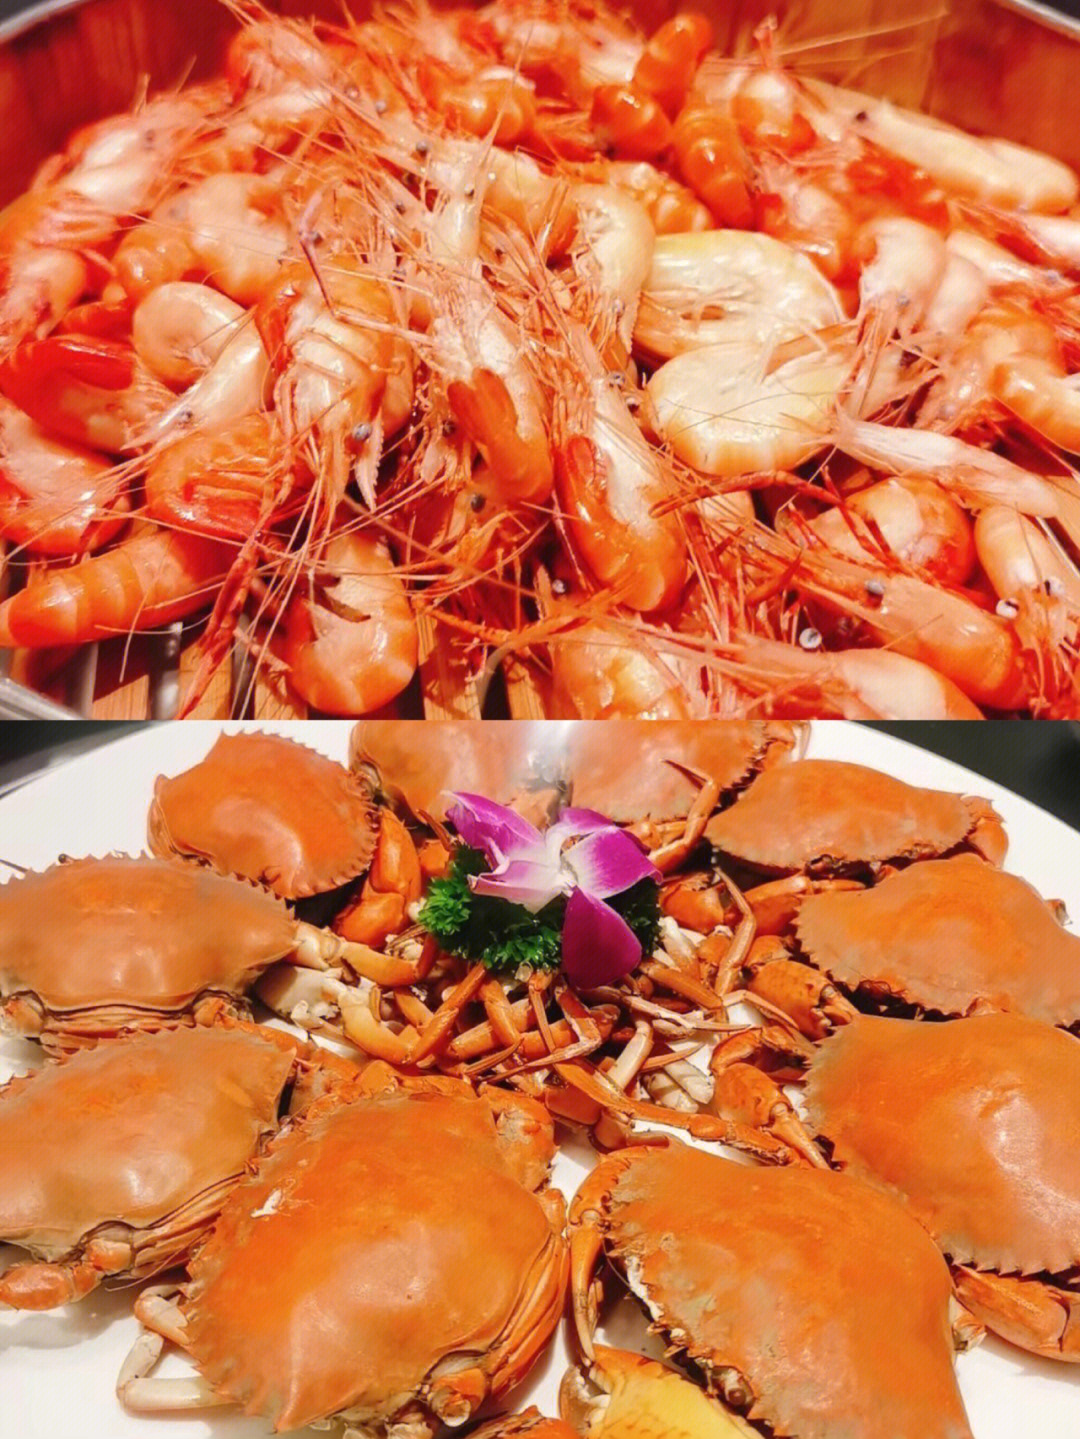 晚餐 海鲜中永远吃不腻的虾和蟹 喜欢简简单单,清蒸够鲜又美味